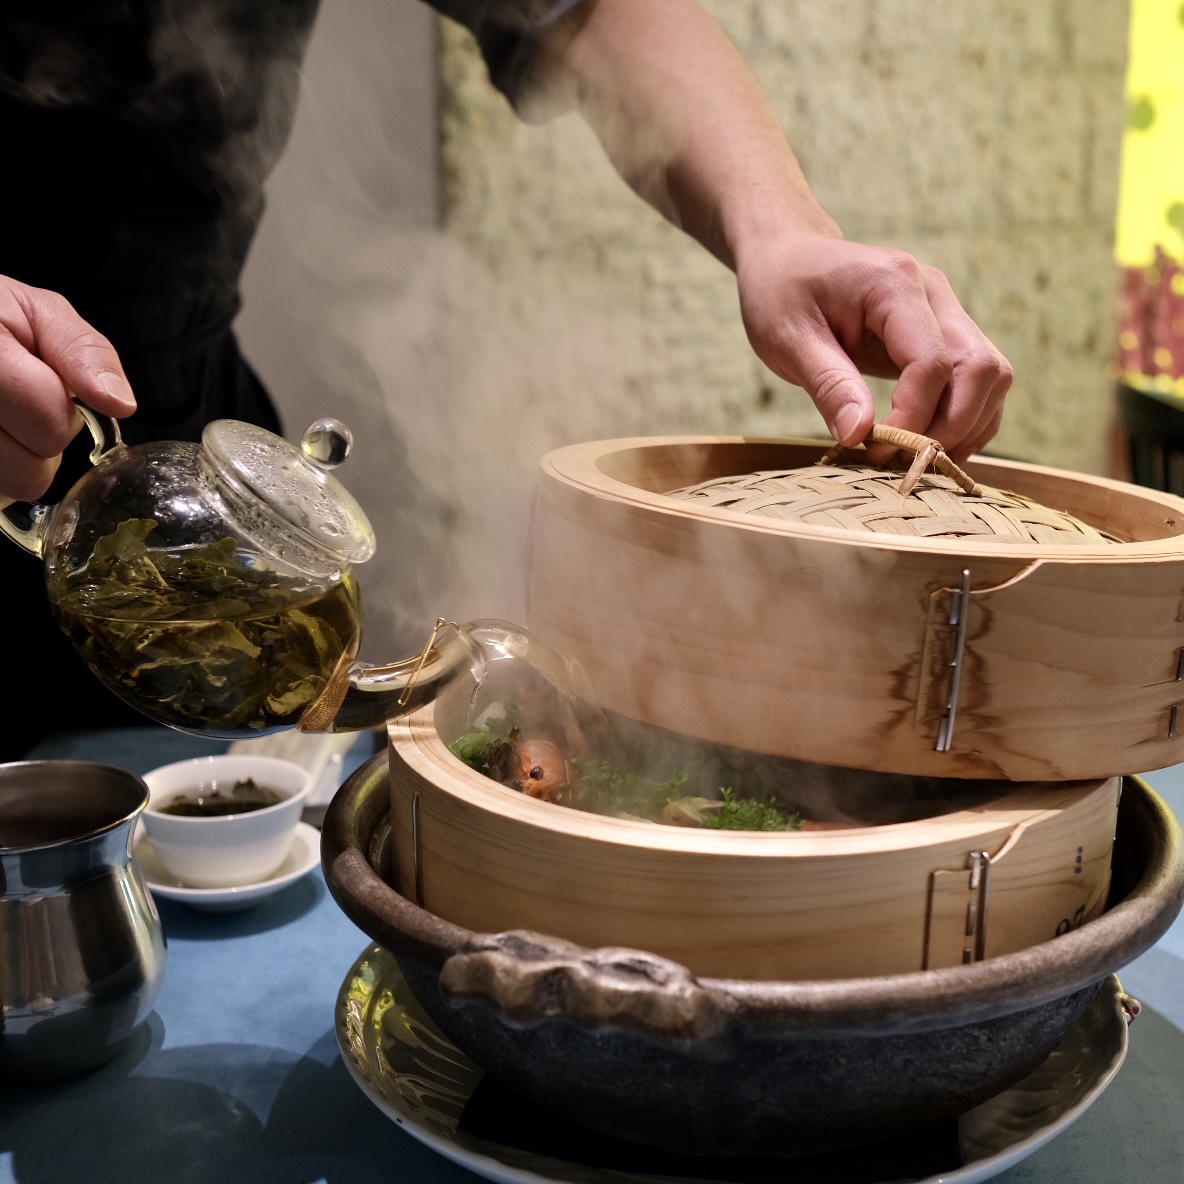 目の前で蒸籠に中国茶を注ぐので、かぐわしい中国茶の香りが漂う。